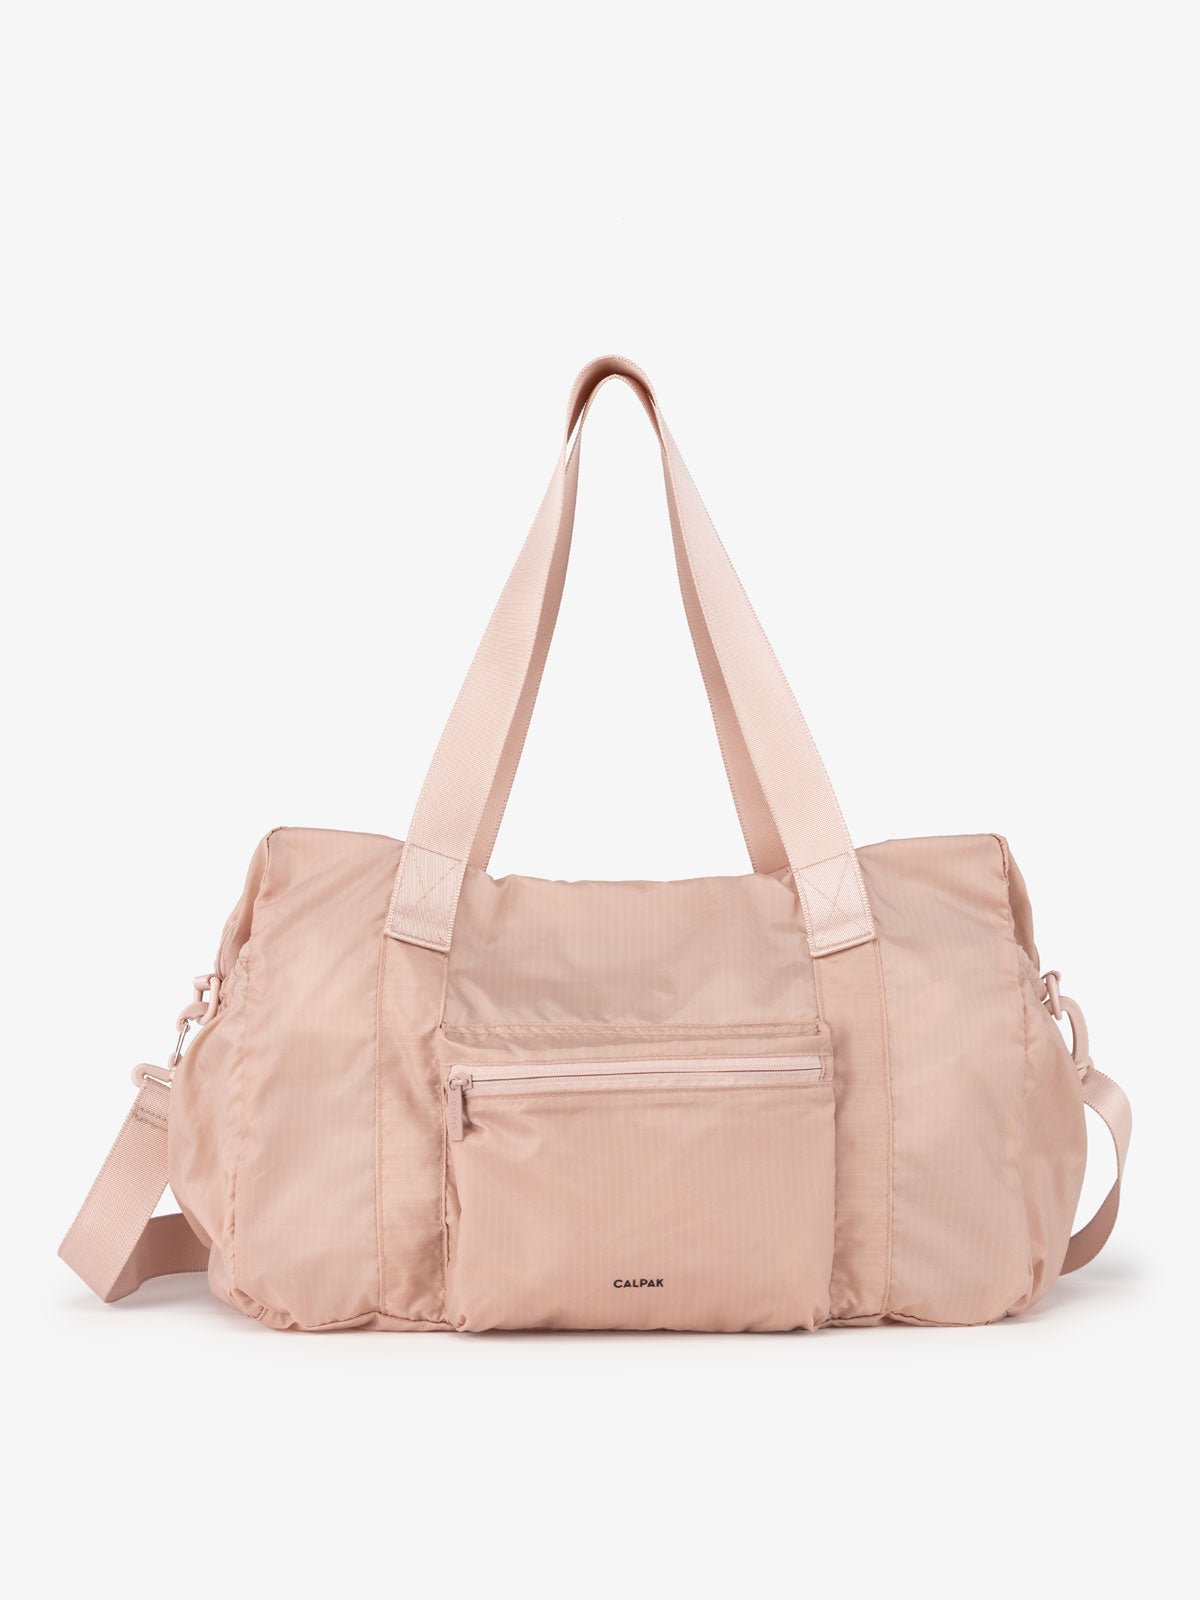 CALPAK lightweight pink duffle bag for women